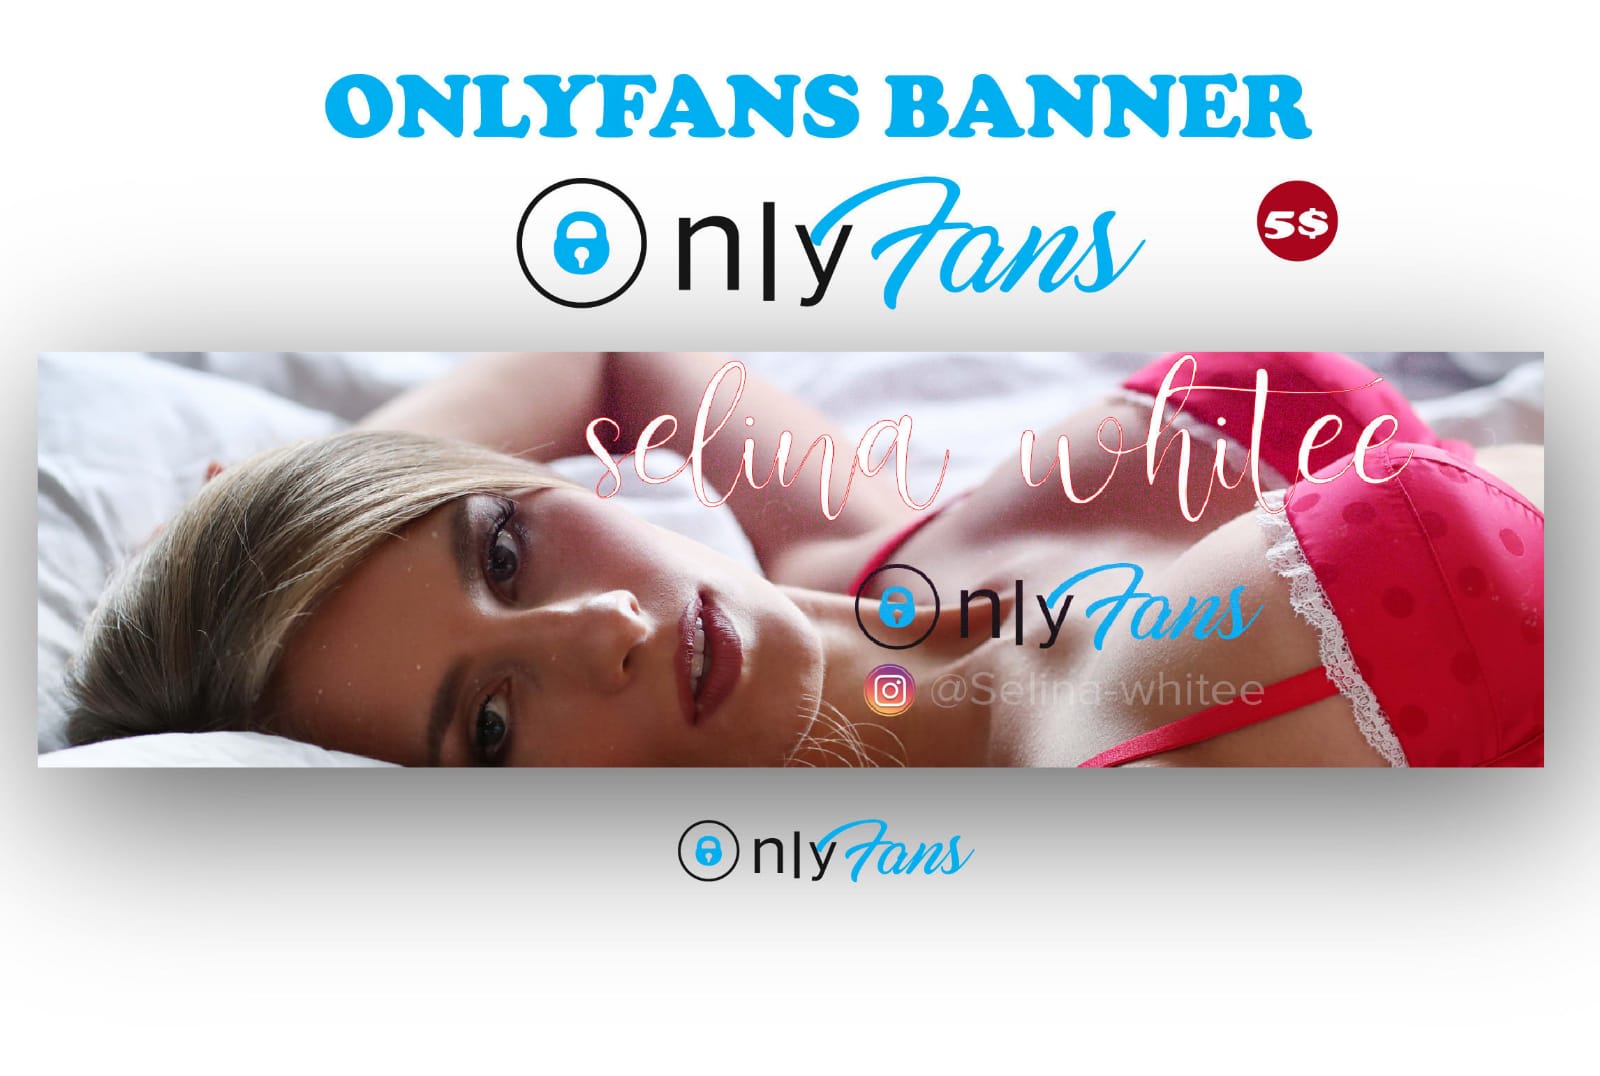 Only fans banner maker